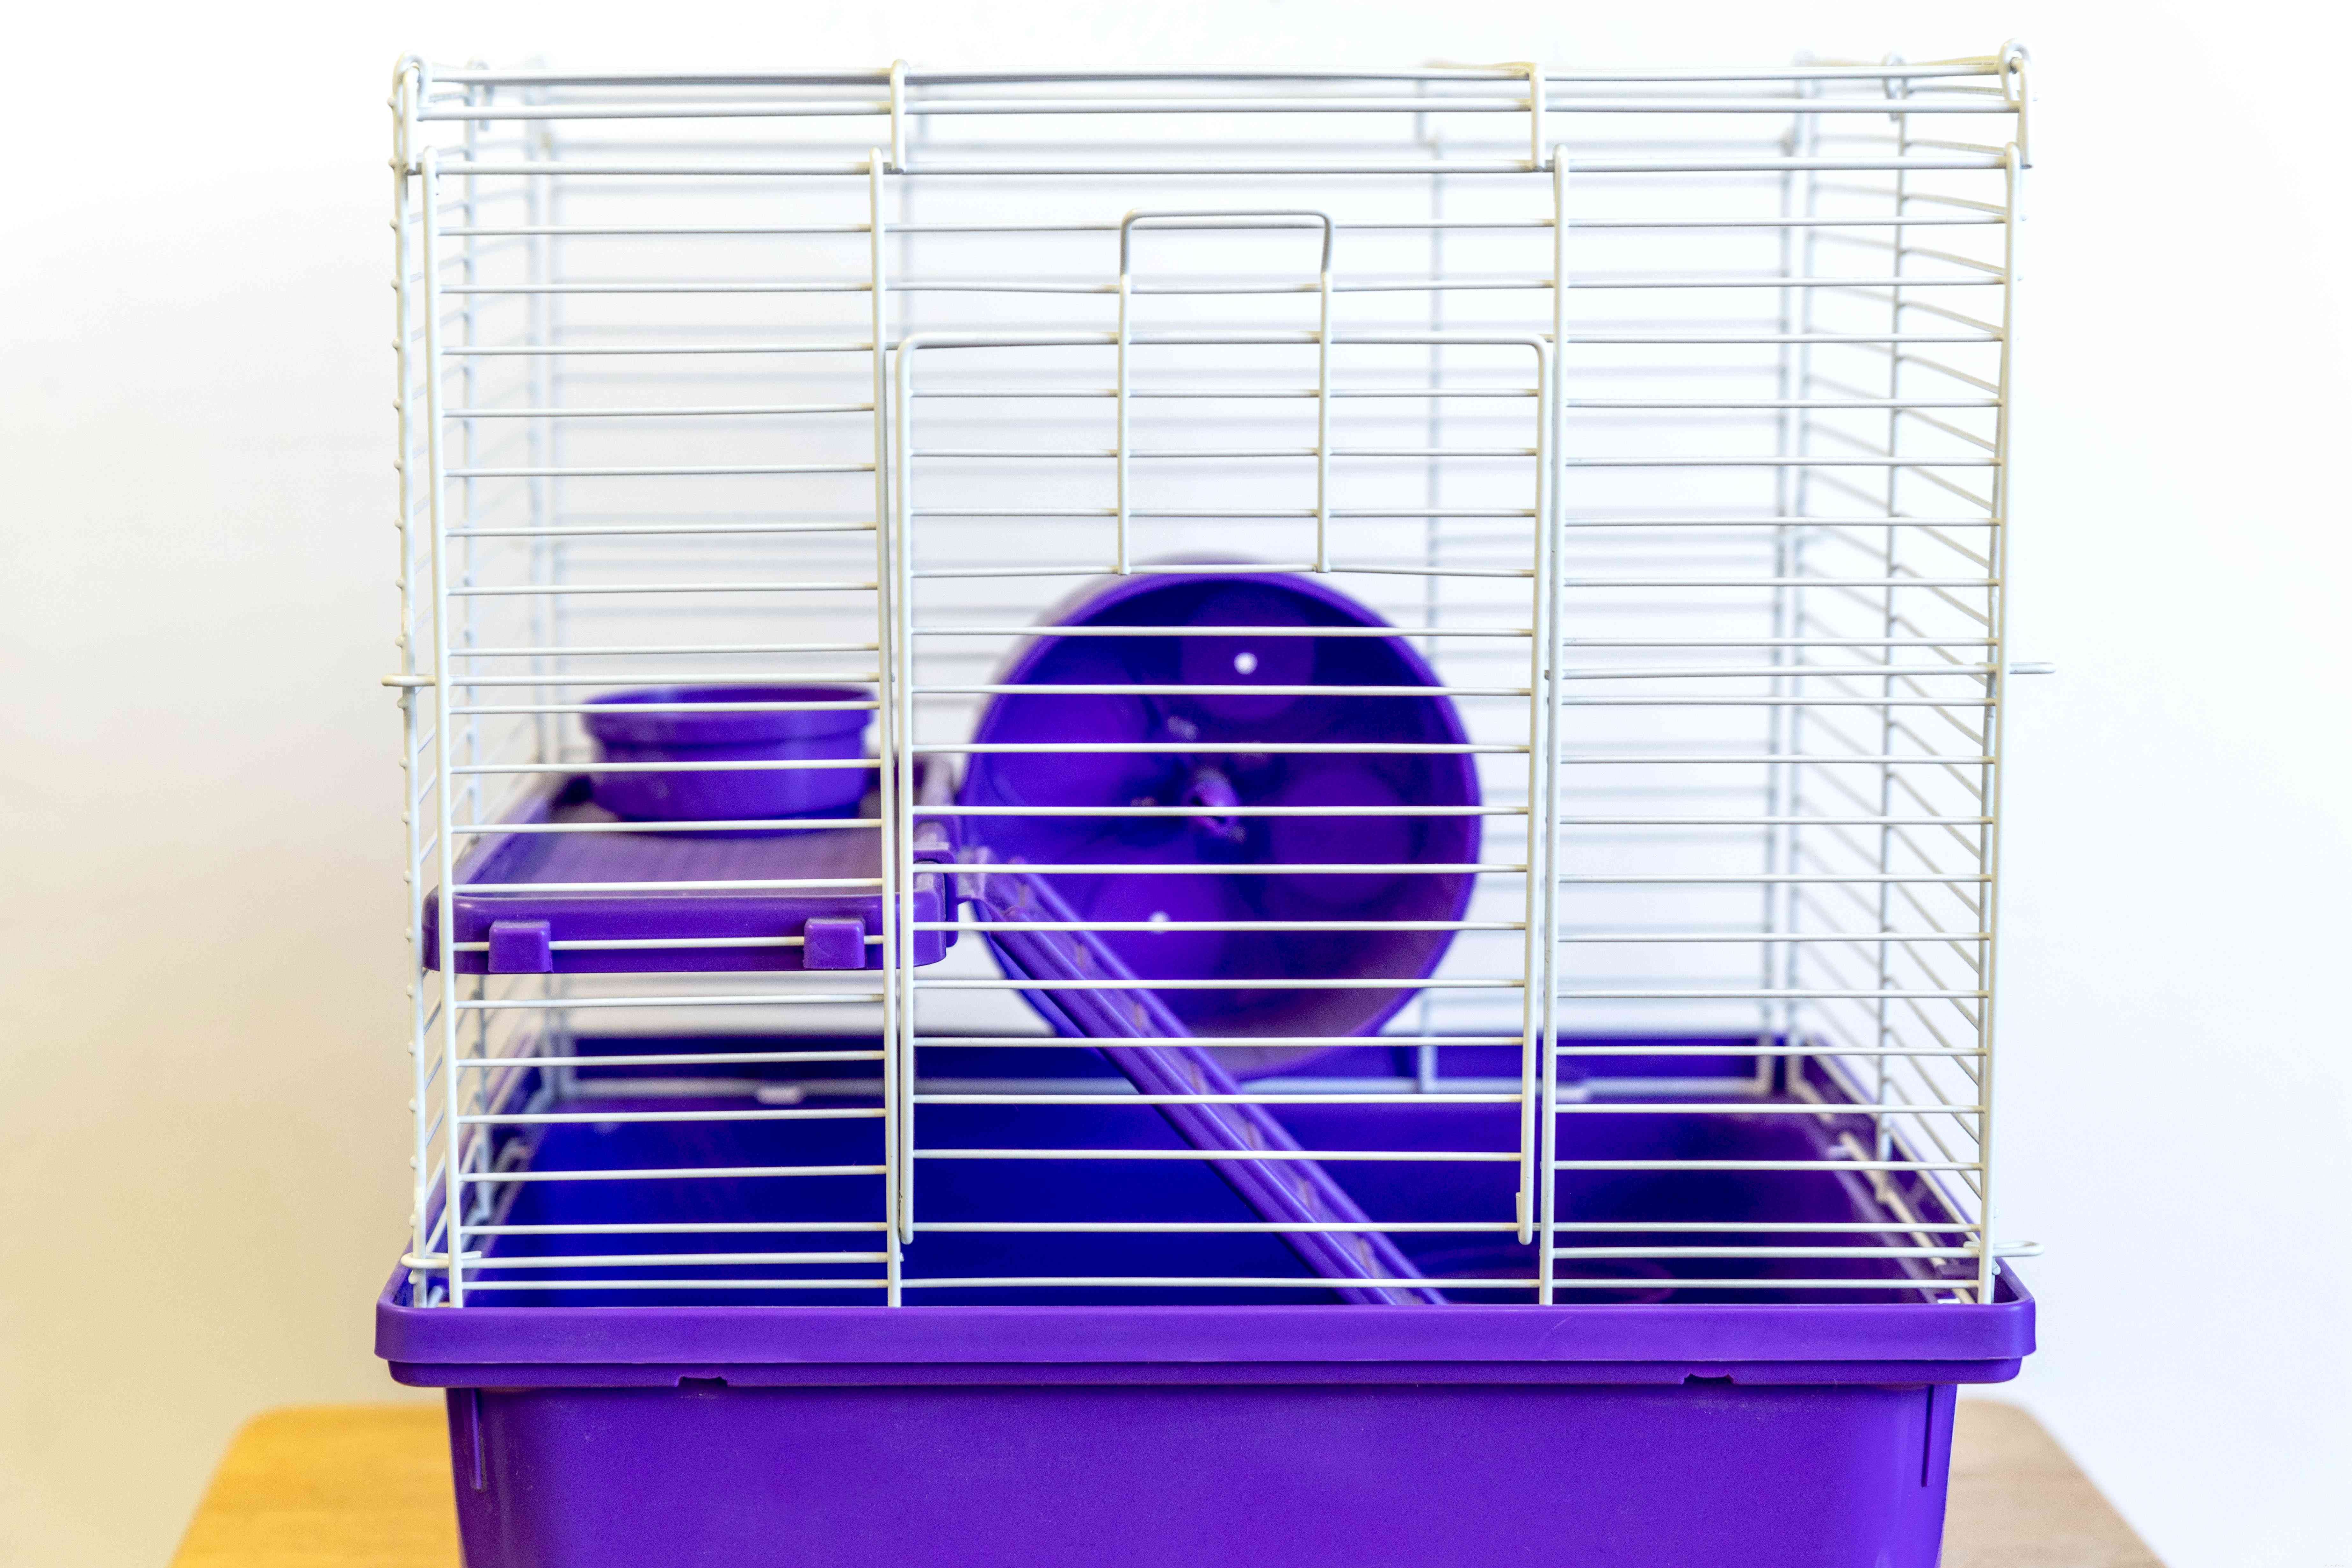 Hamsters als huisdier houden:zorginformatie